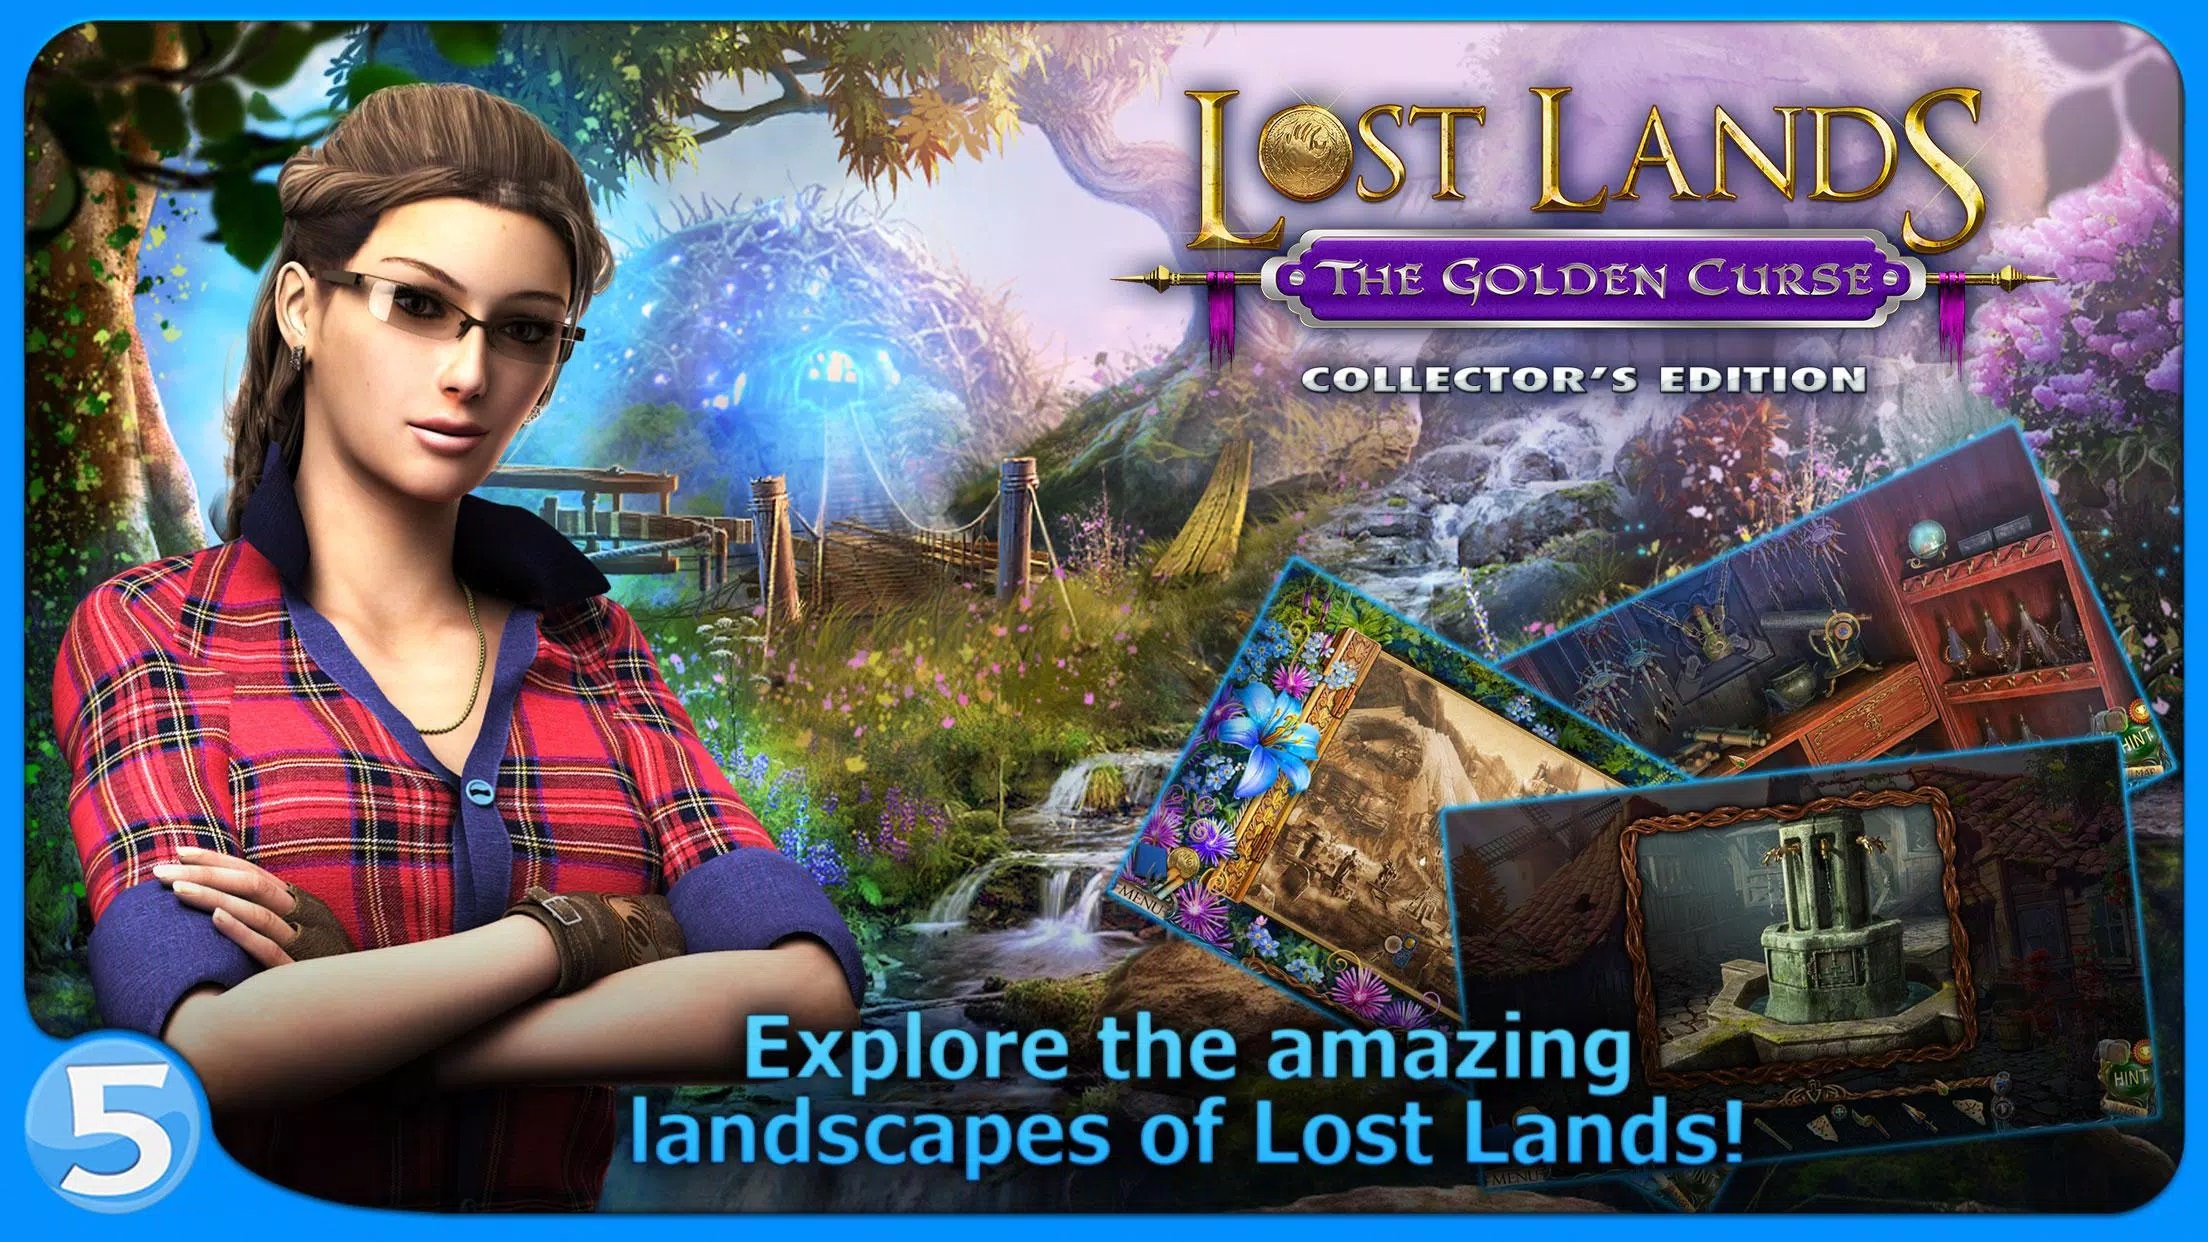 ¡Descarga y jugar Lost Lands 3 en el ordenador！